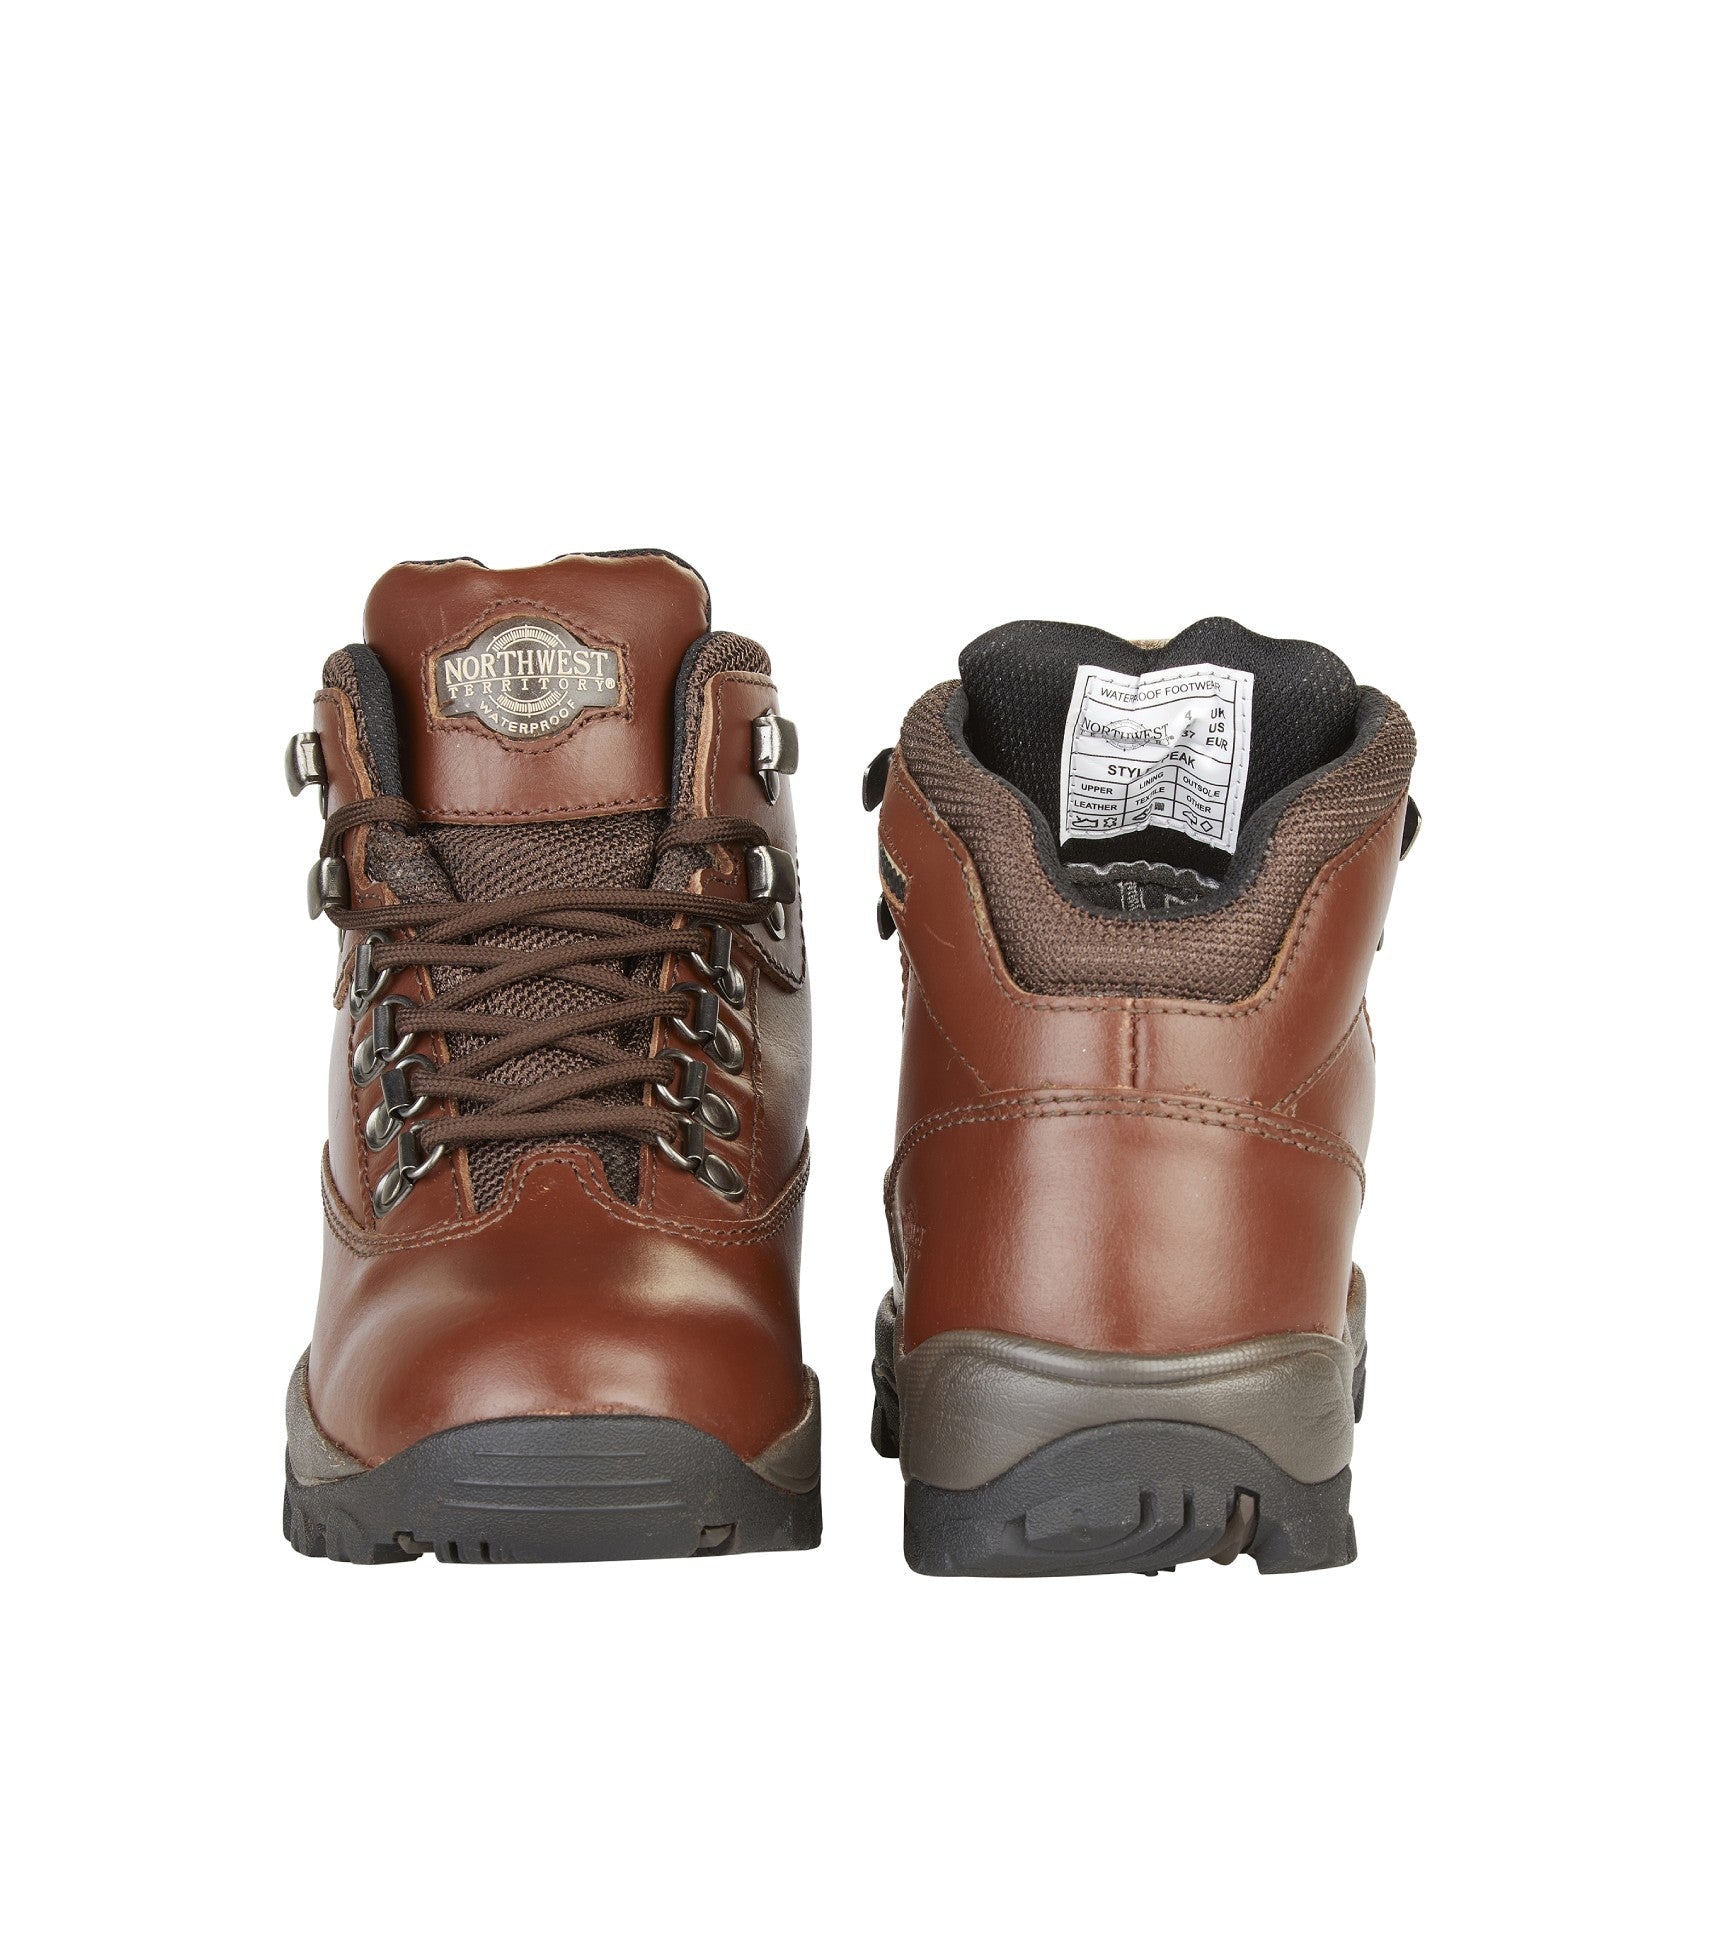 Women's Leather Waterproof Walking Boots